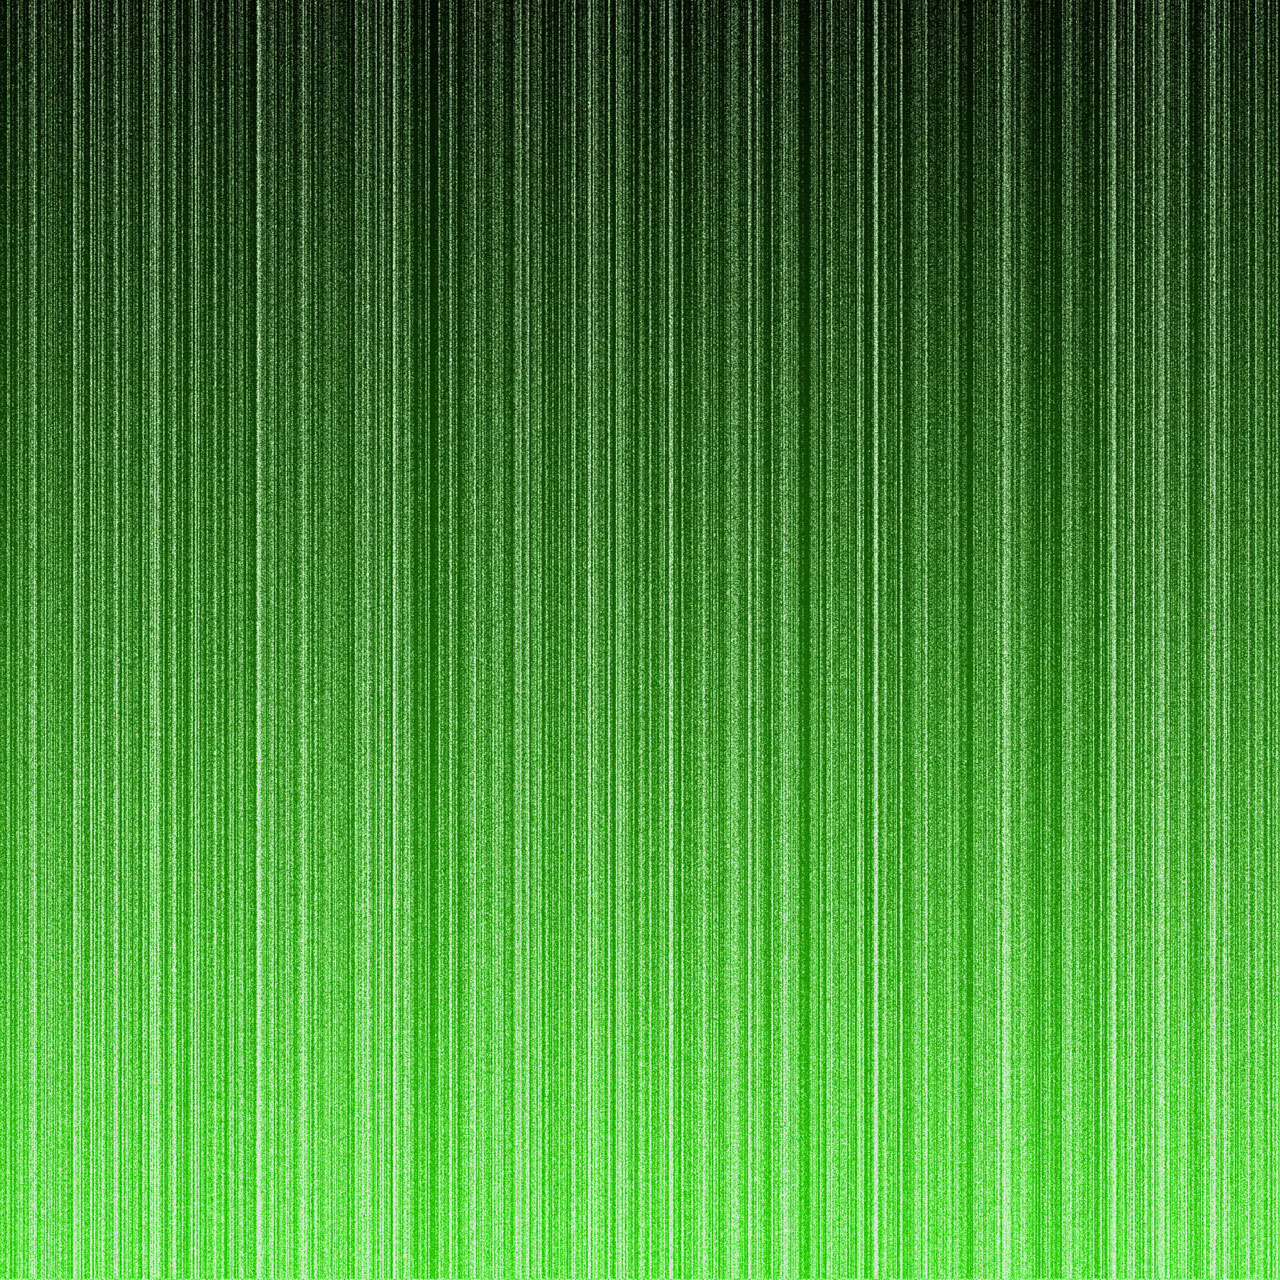 Green Neon Lines